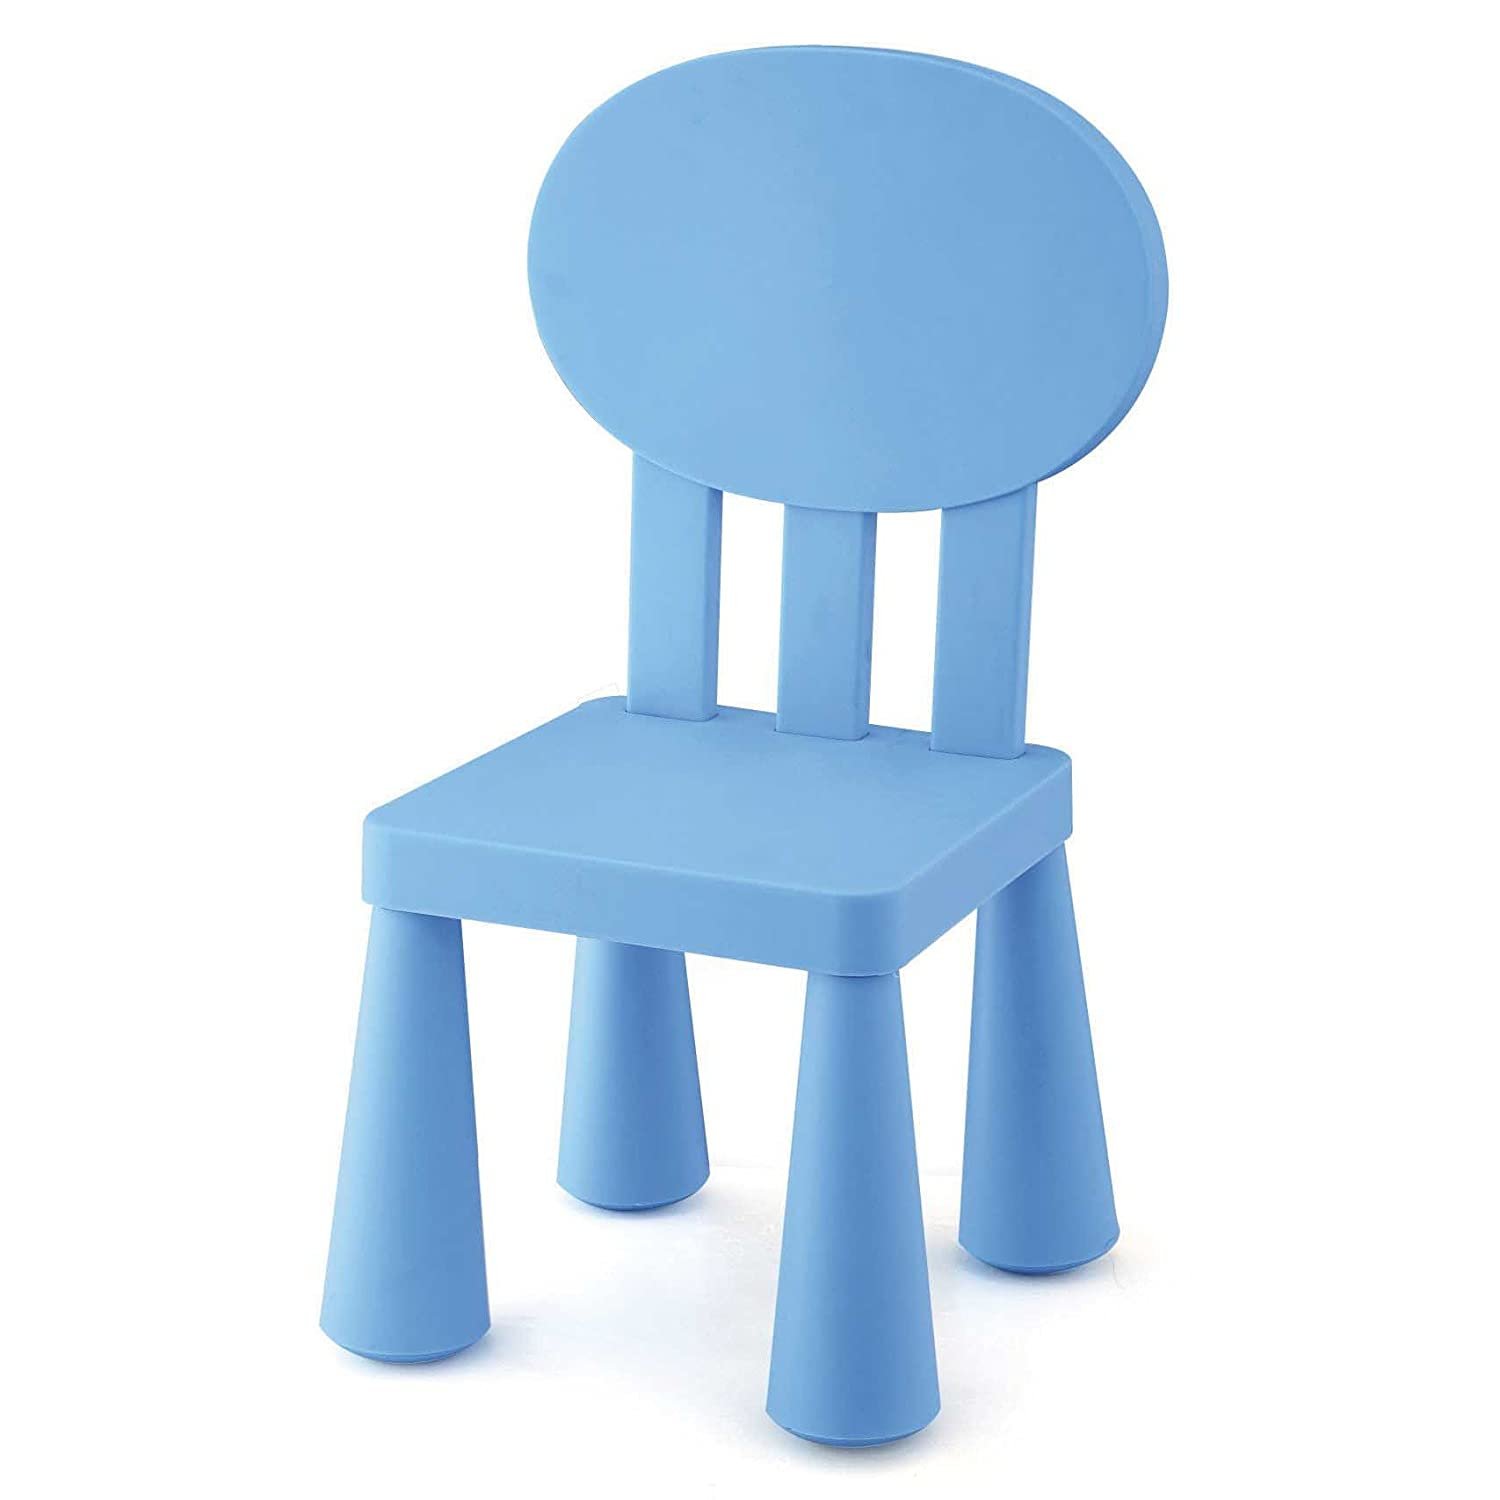 Картинка стул. Стд1013 стульчик. Стул детский пластиковый. Пластмасс стул для детей. Пластмассовые стулья цветные детские.